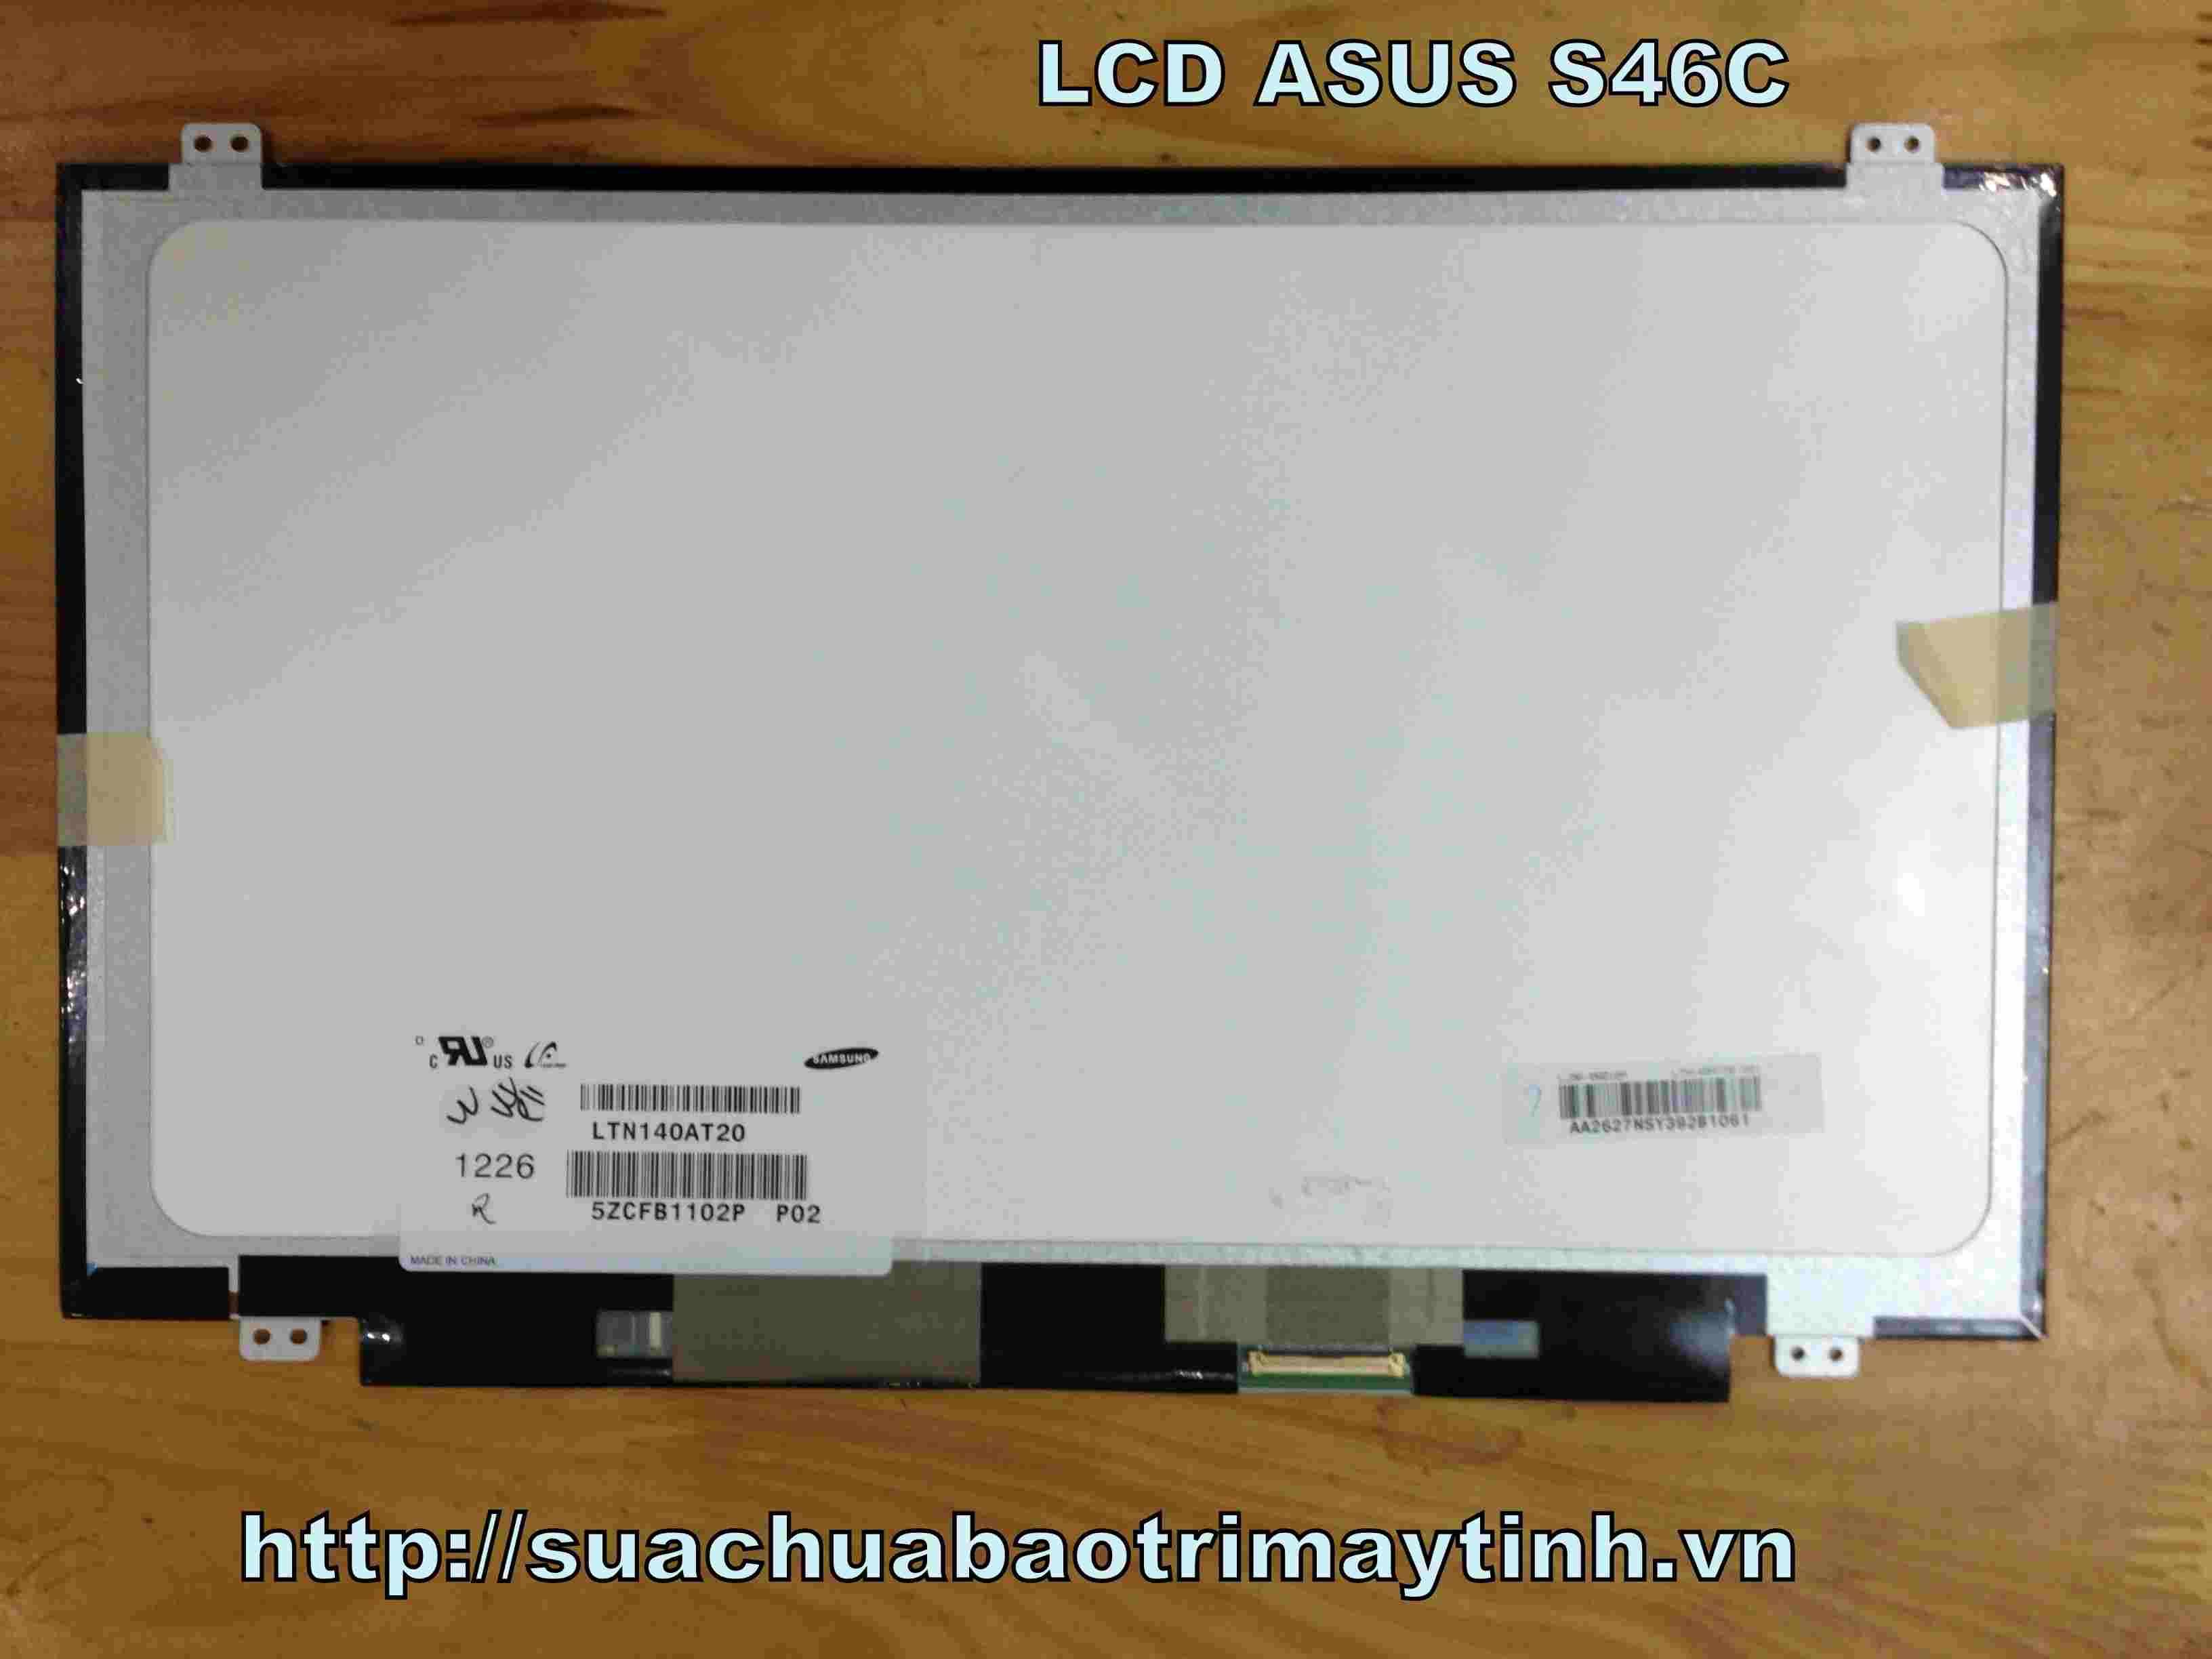 Man hinh Laptop ASUS S46C.JPG